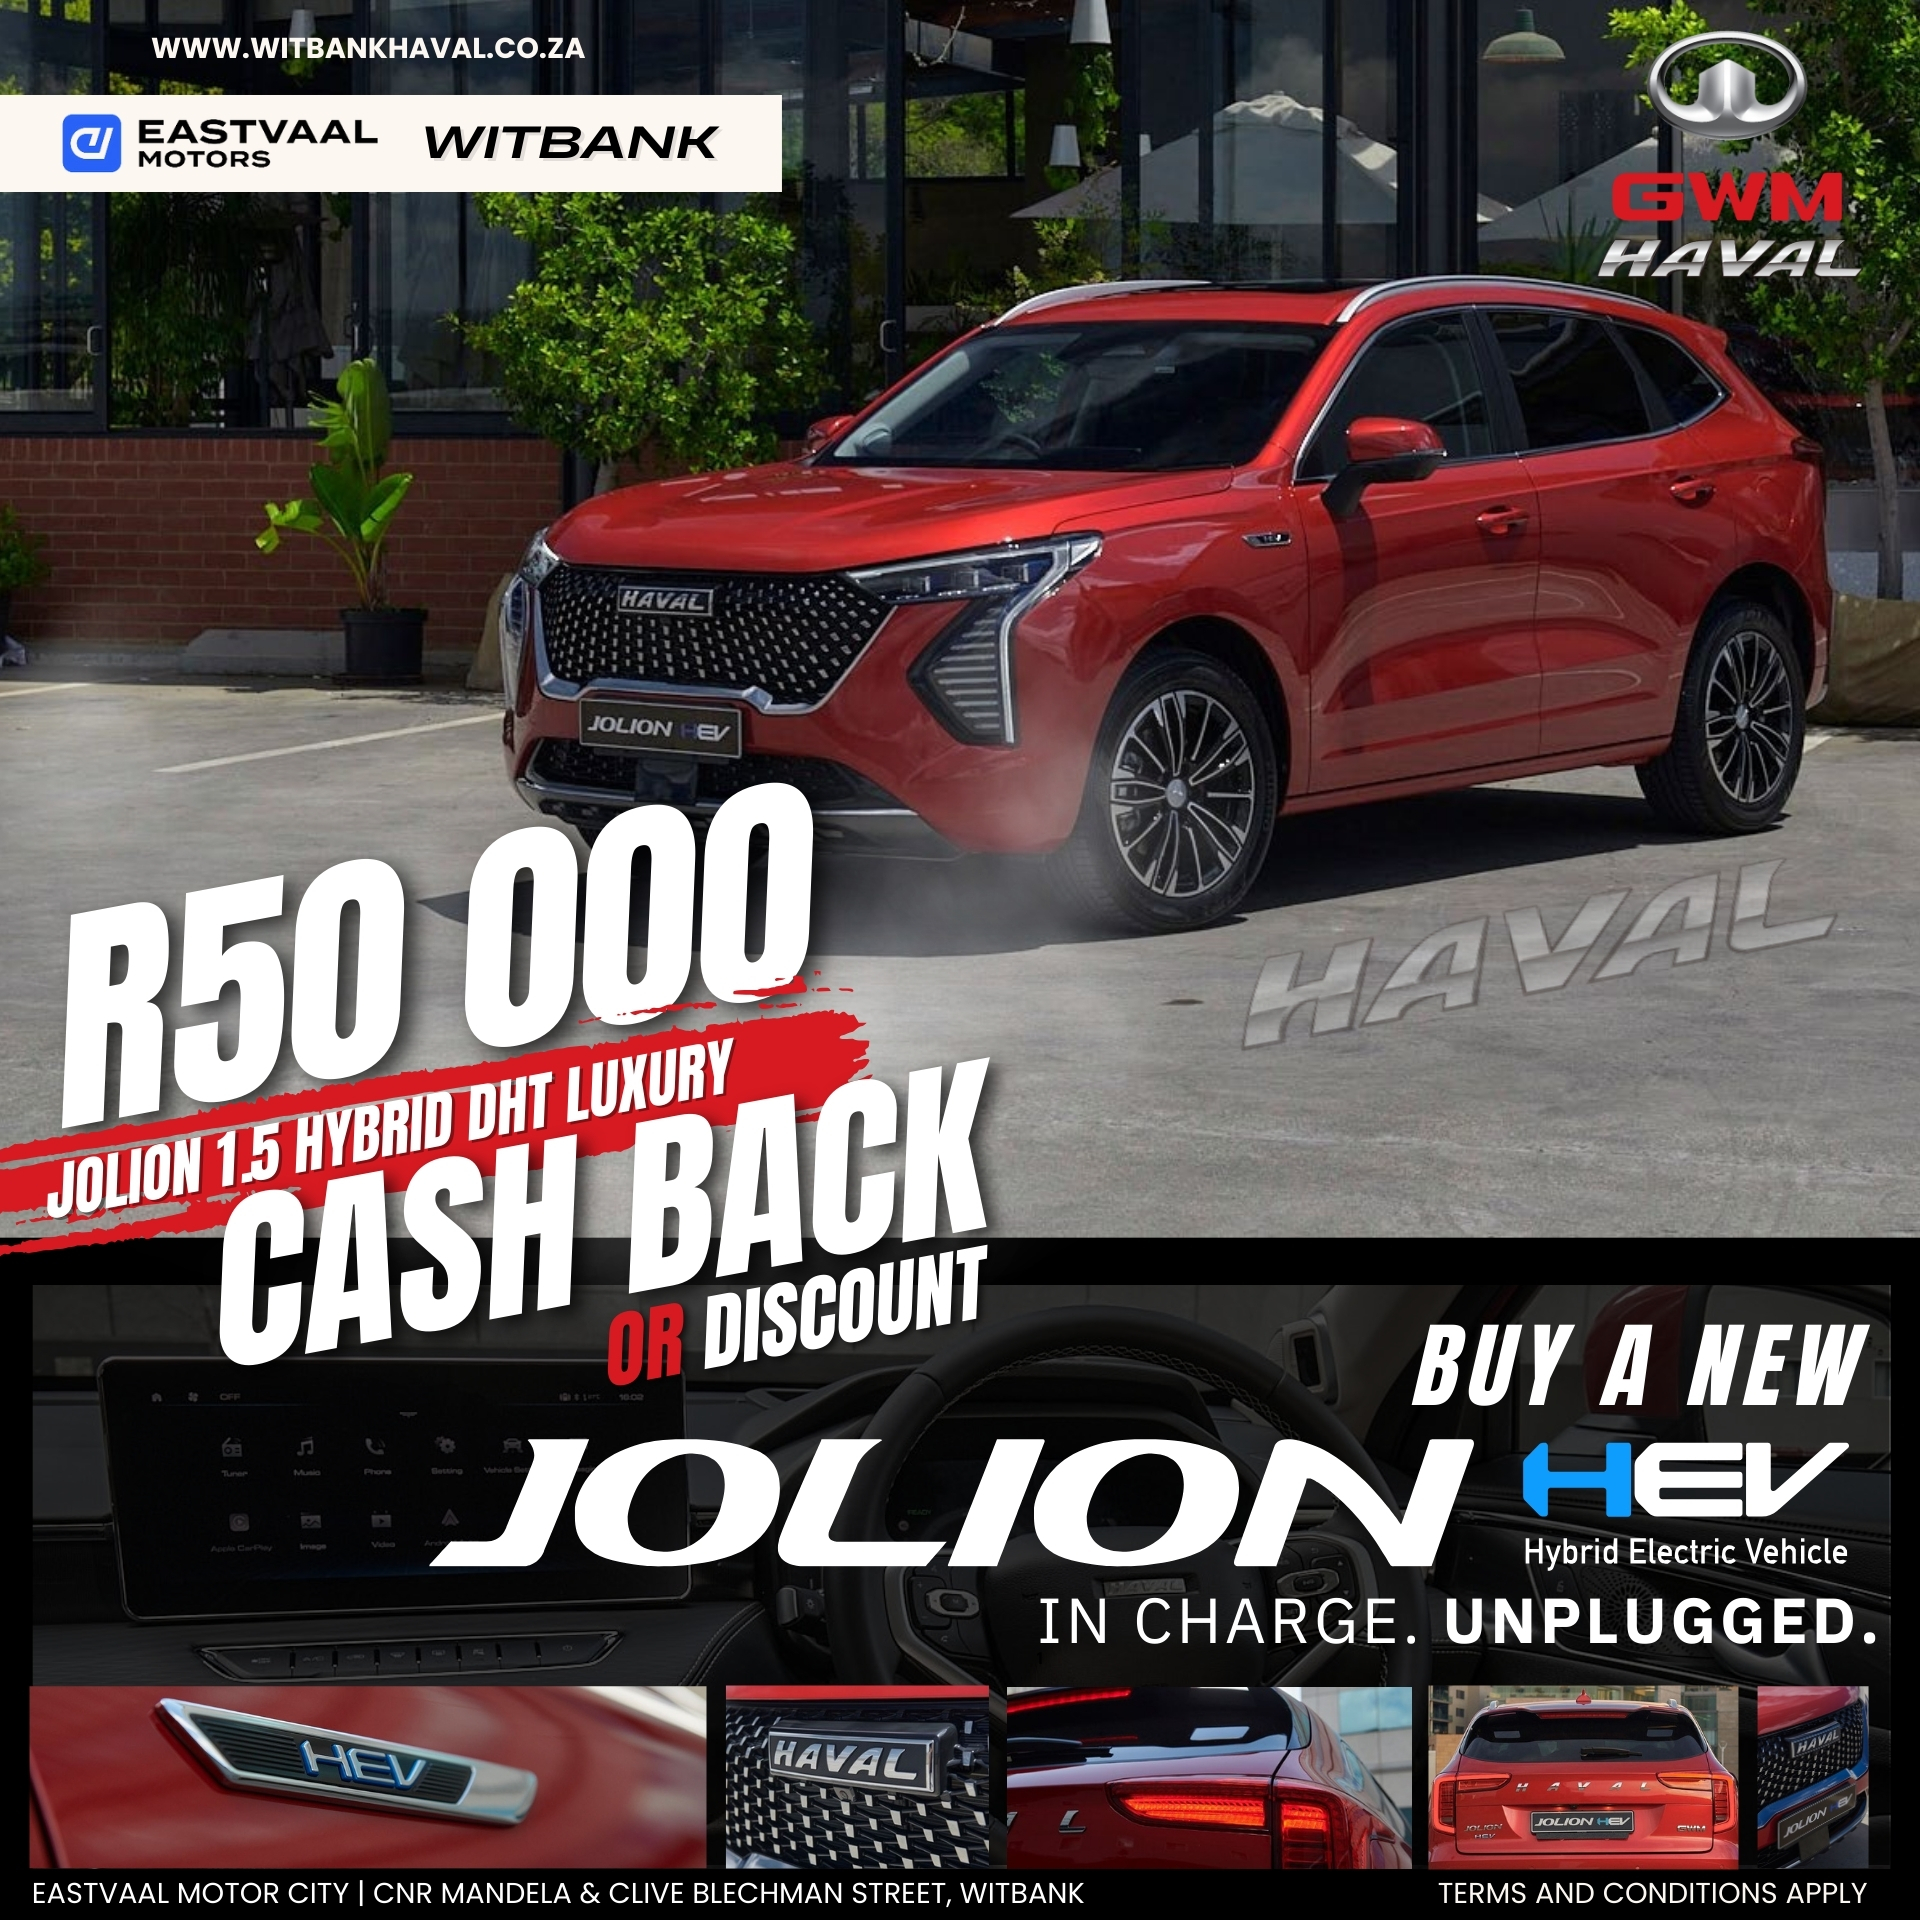 Haval Jolion HEV image from Eastvaal Motors